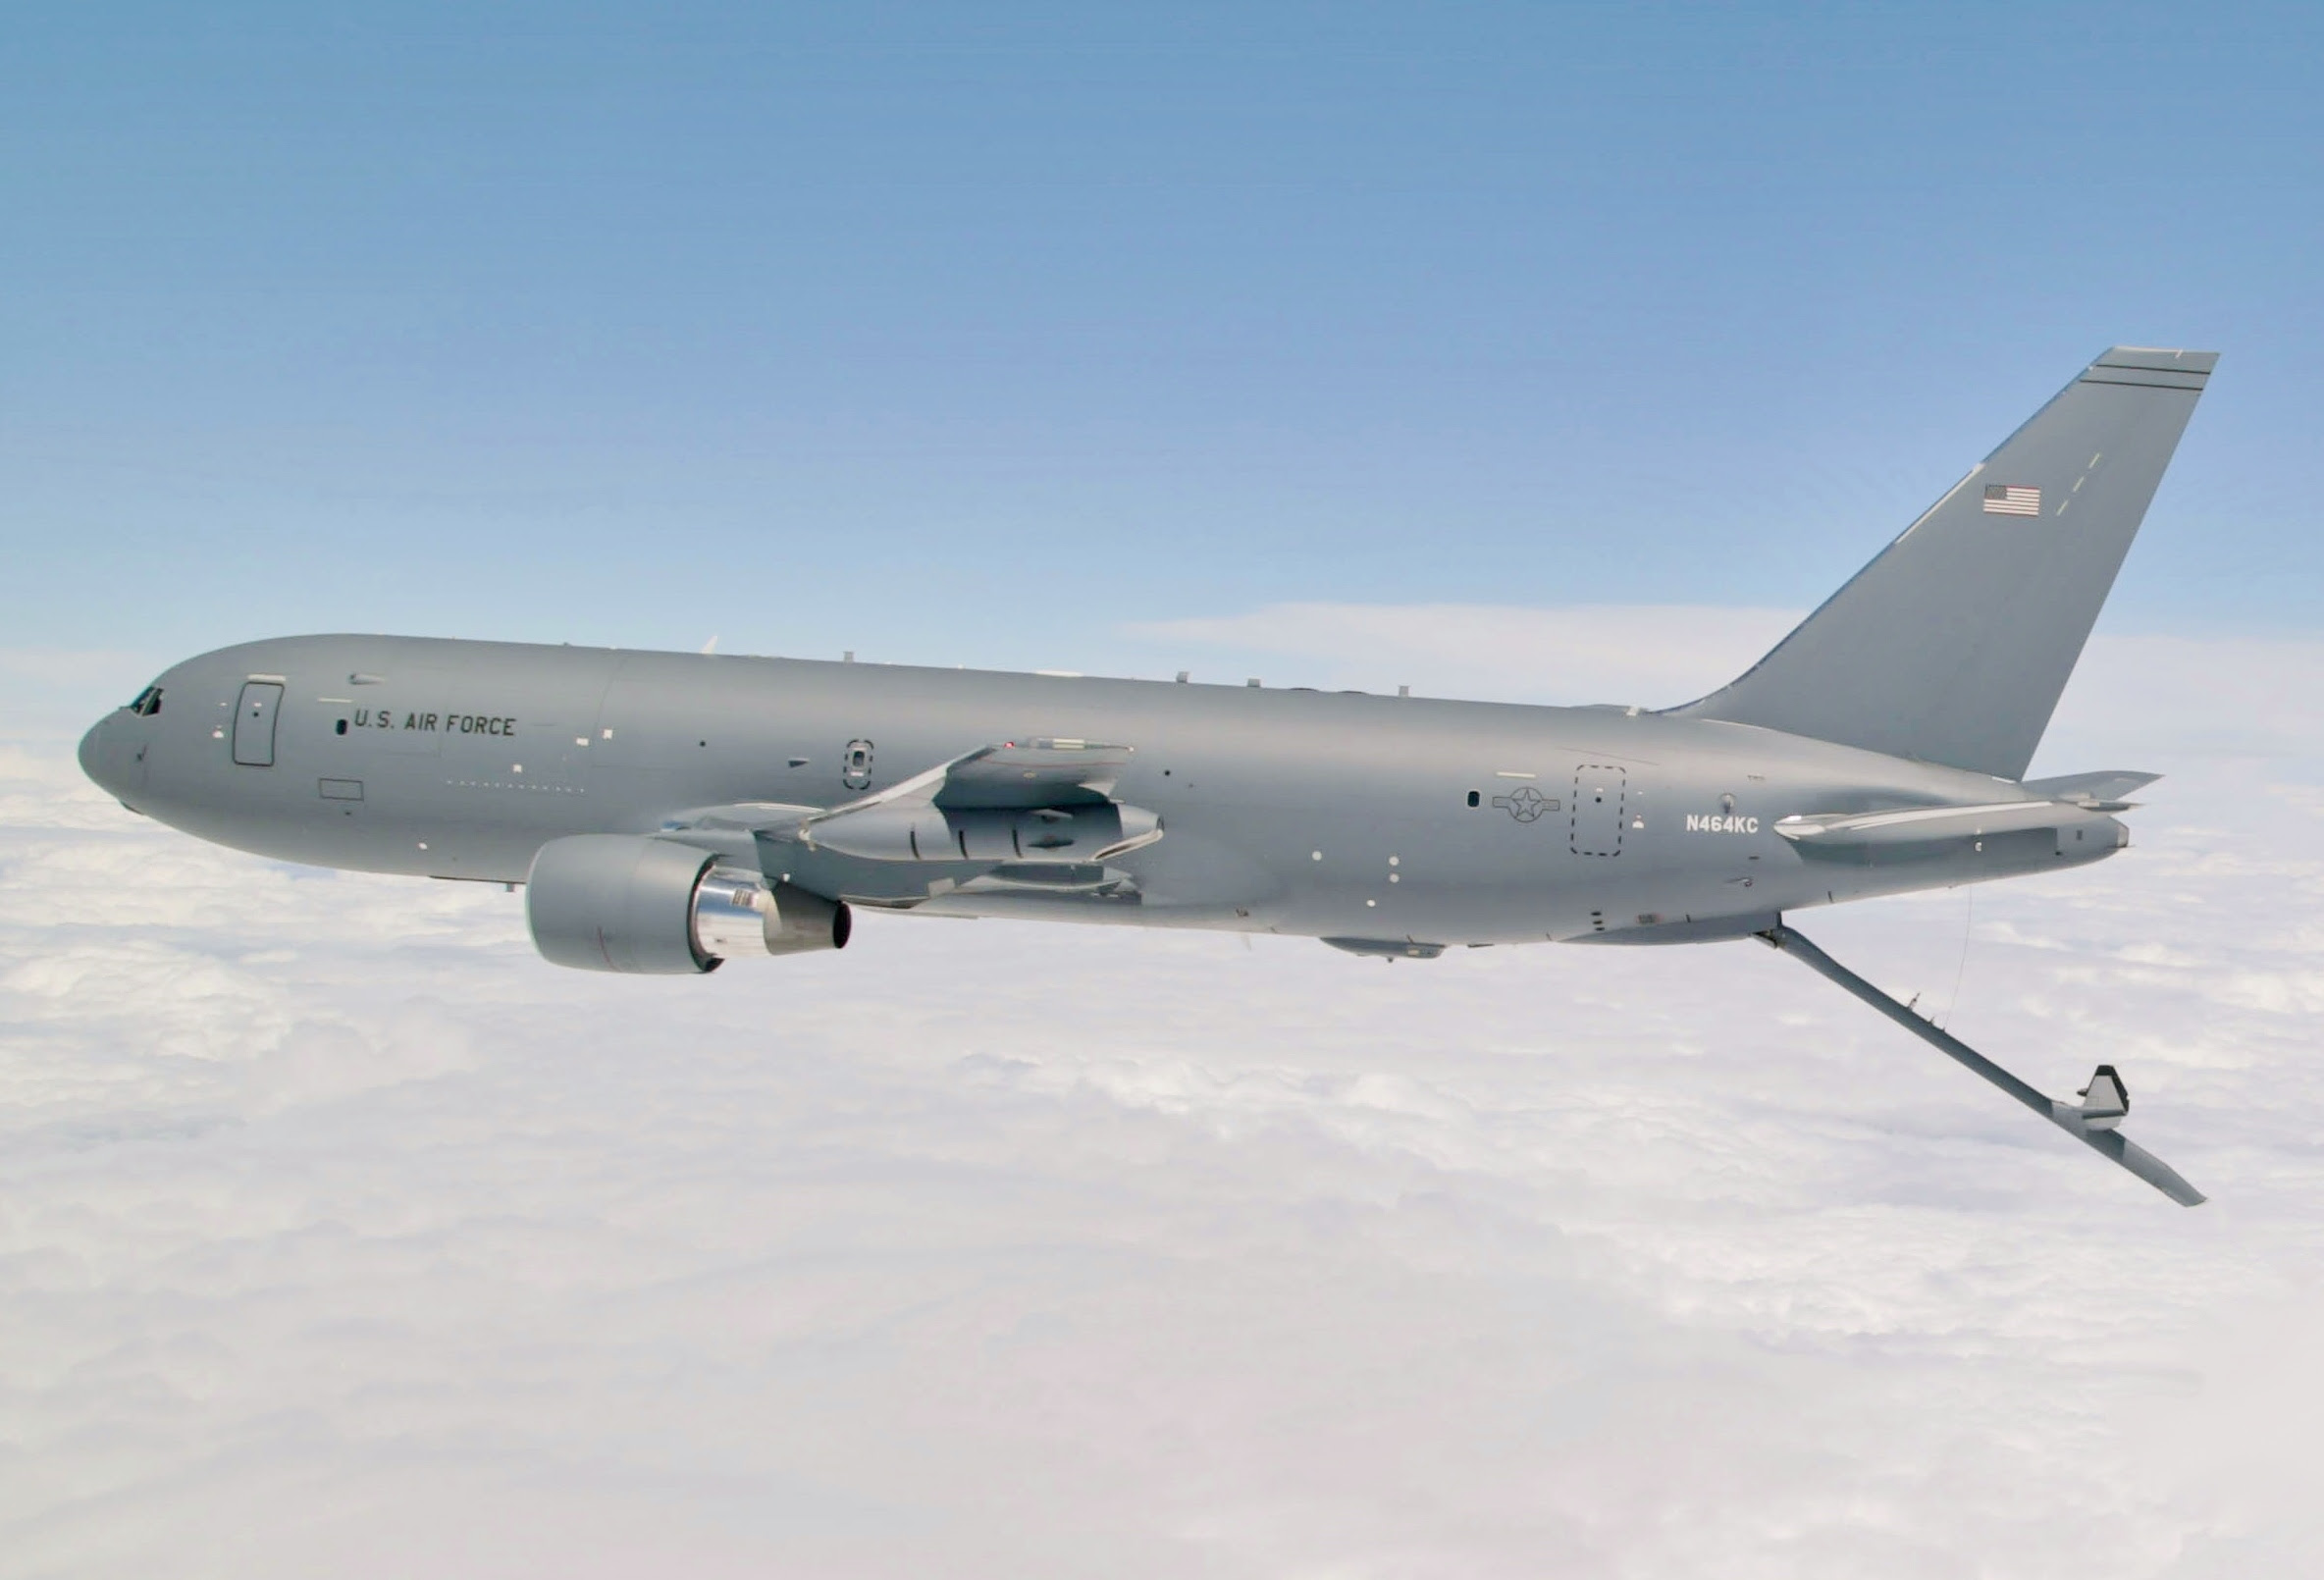 Boeing KC-46 Pegasus - Wikipedia